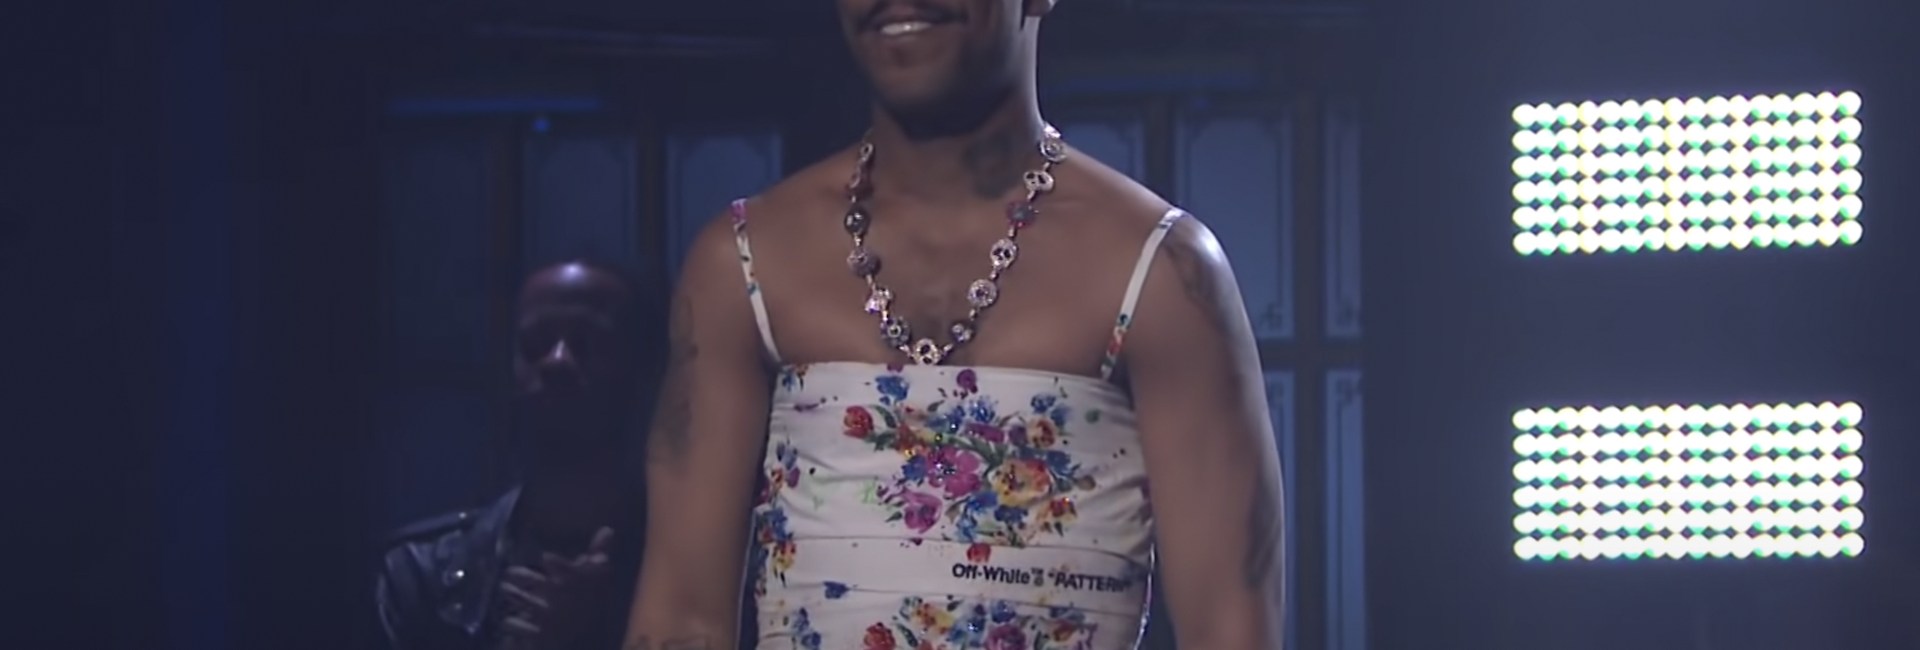 Kid Cudi en robe à fleurs signée Off-White sur le plateau du Saturday Night Live, le 10 avril 2021Kid Cudi en robe à fleurs signée Off-White sur le plateau du Saturday Night Live, le 10 avril 2021